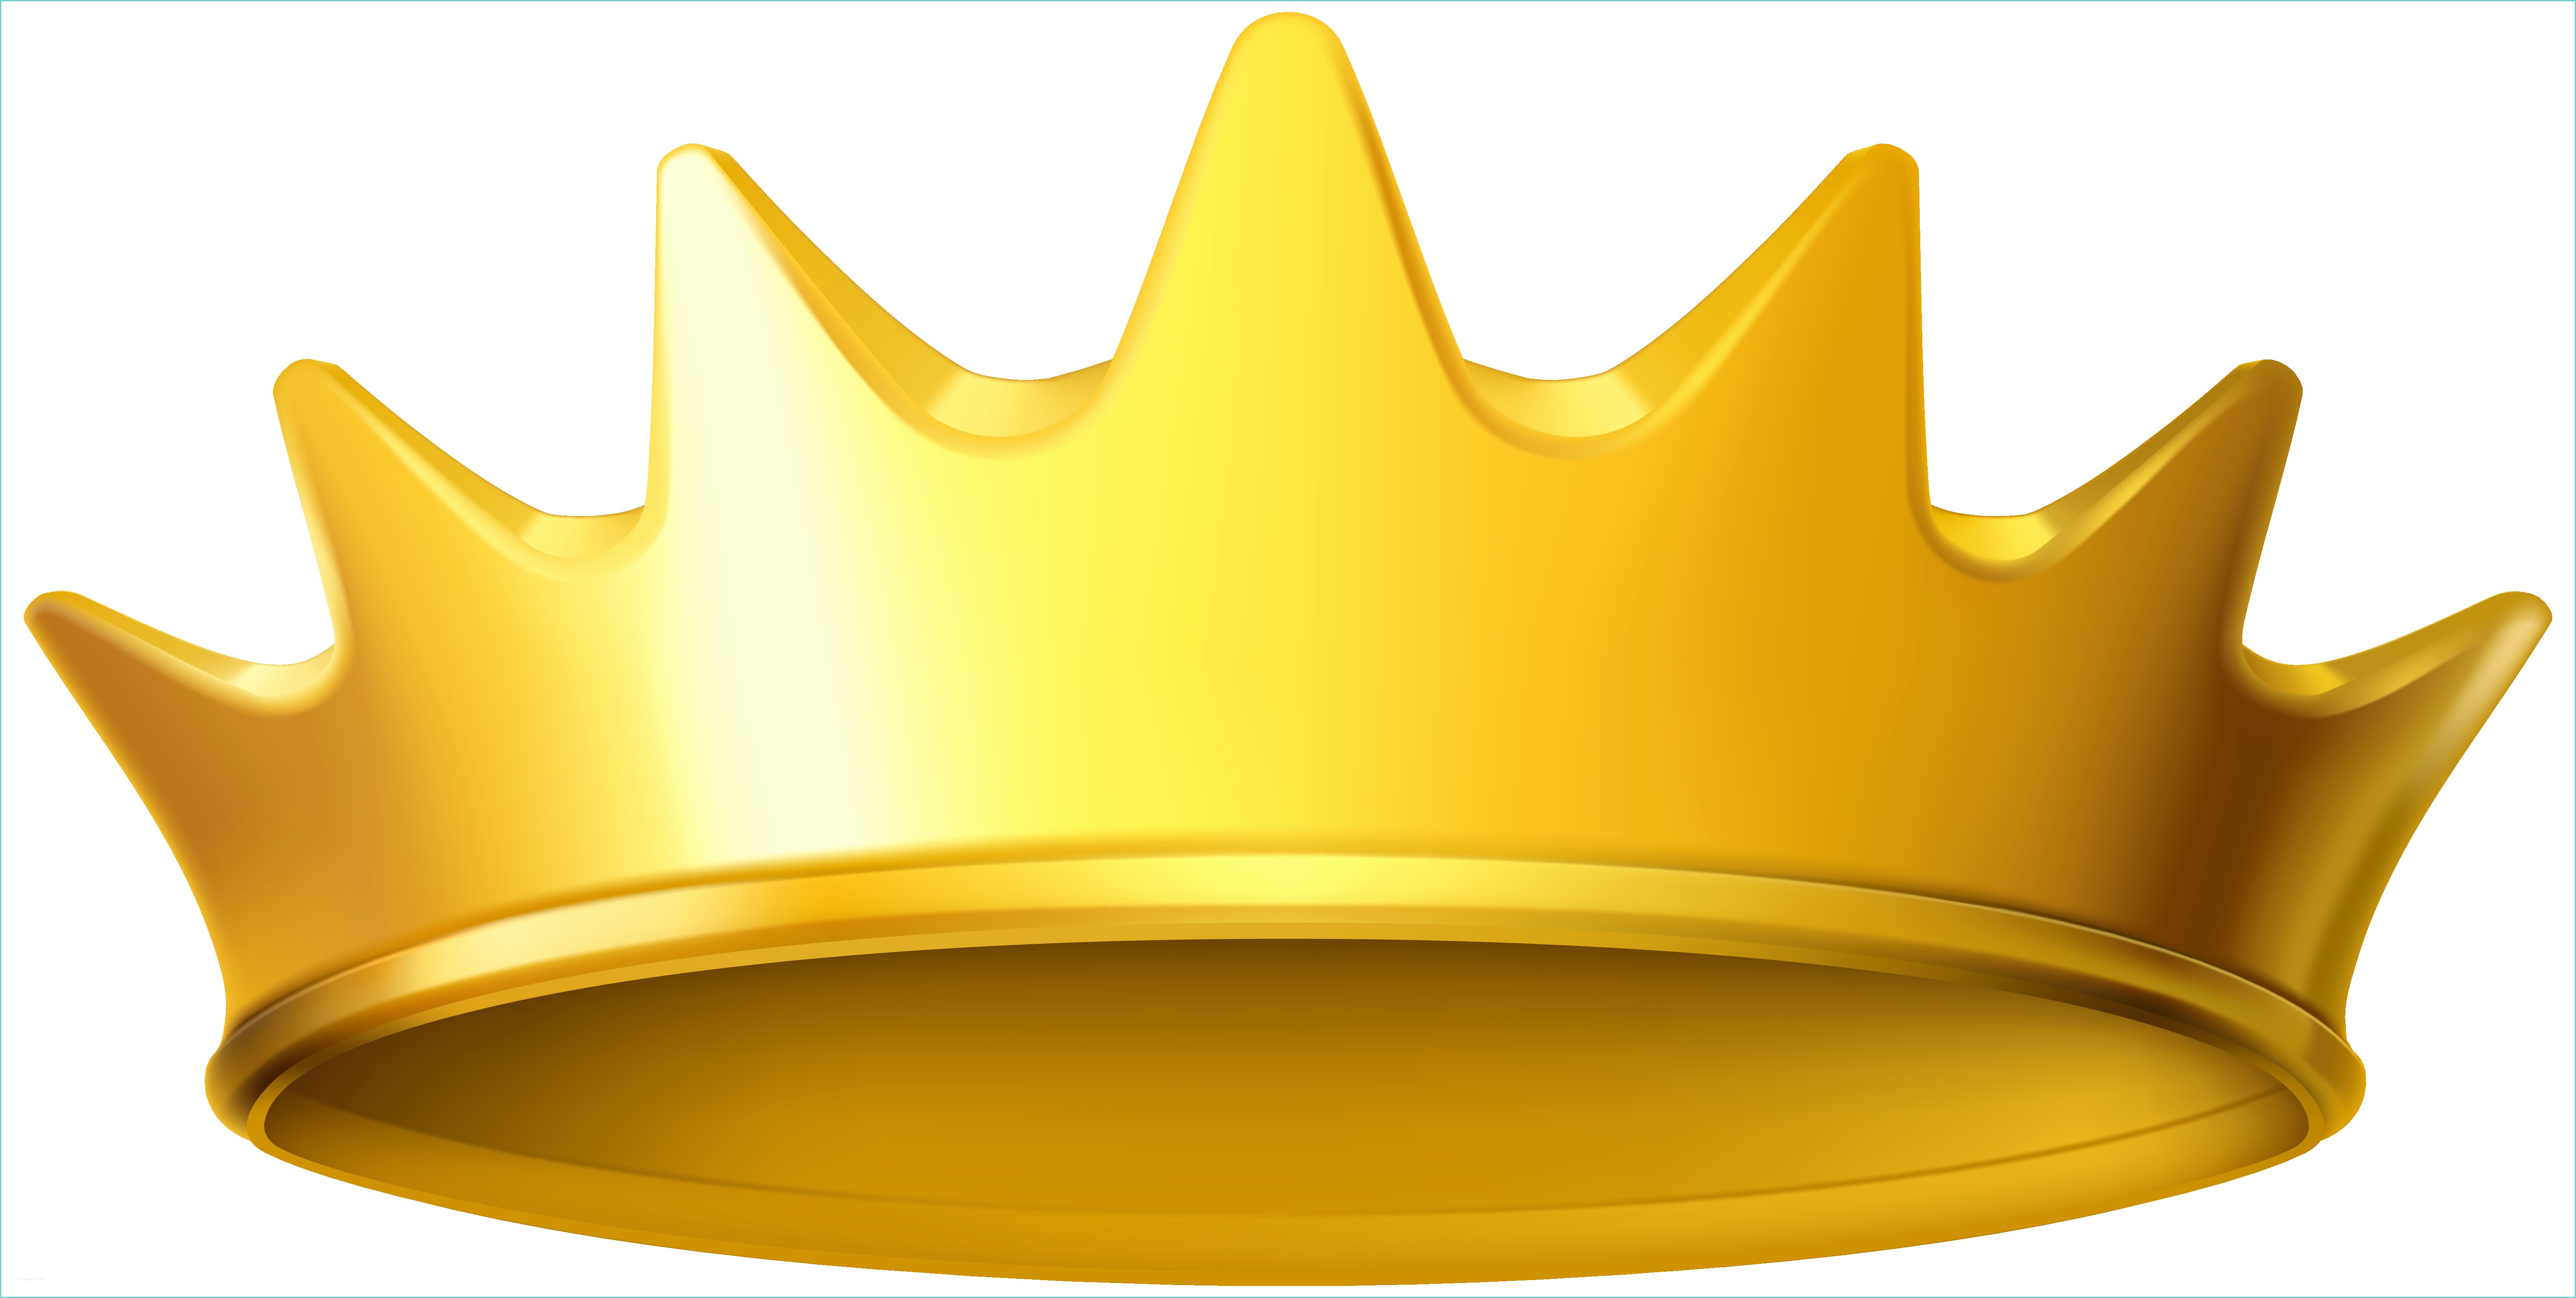 Plaque Pvc Transparent Castorama Golden Crown Clipart Png Image